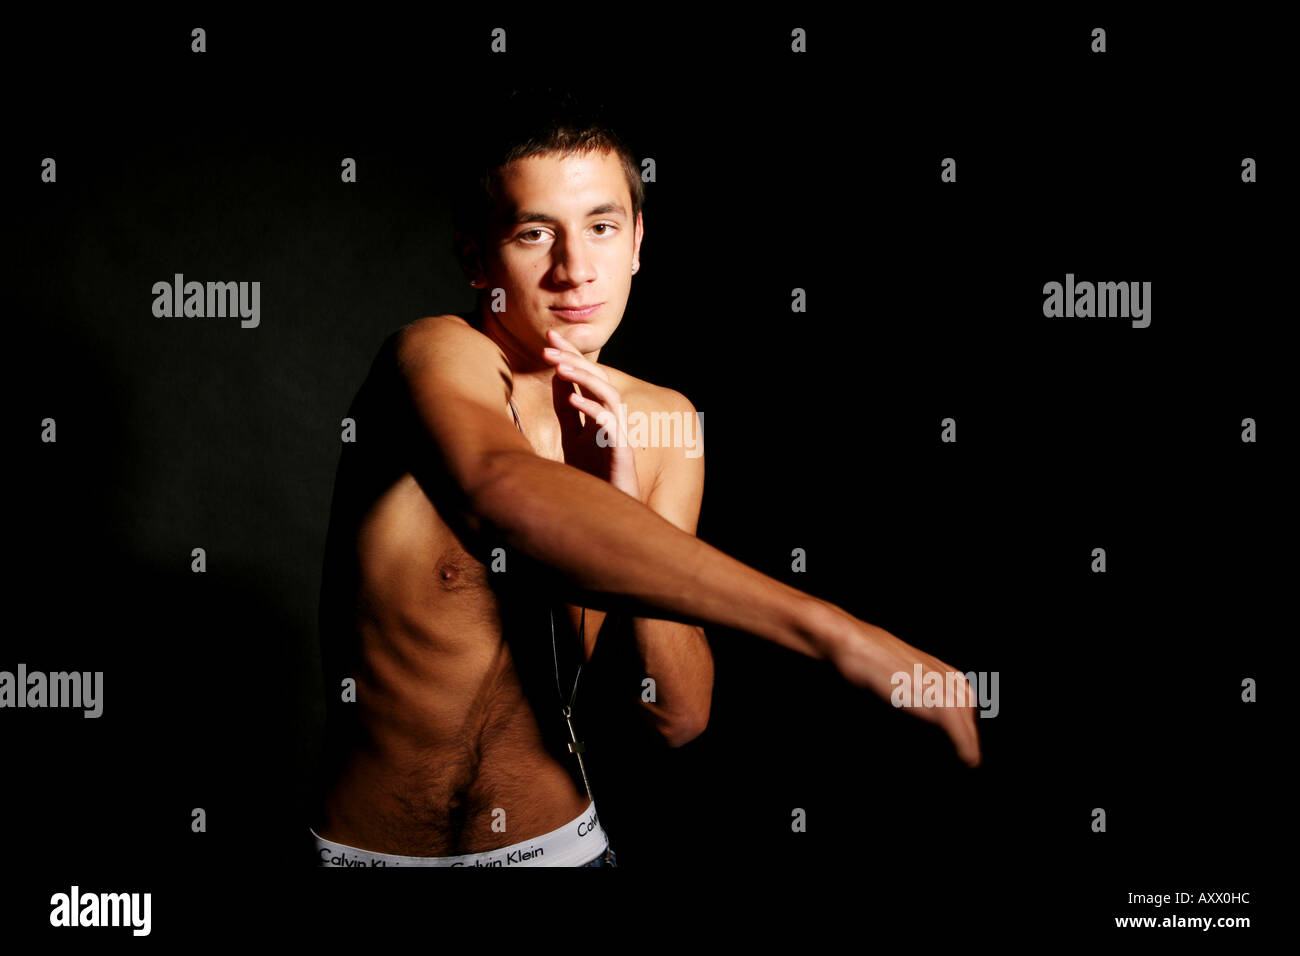 Les combats de boxe topless Man with attitude sur fond noir Photo Stock -  Alamy